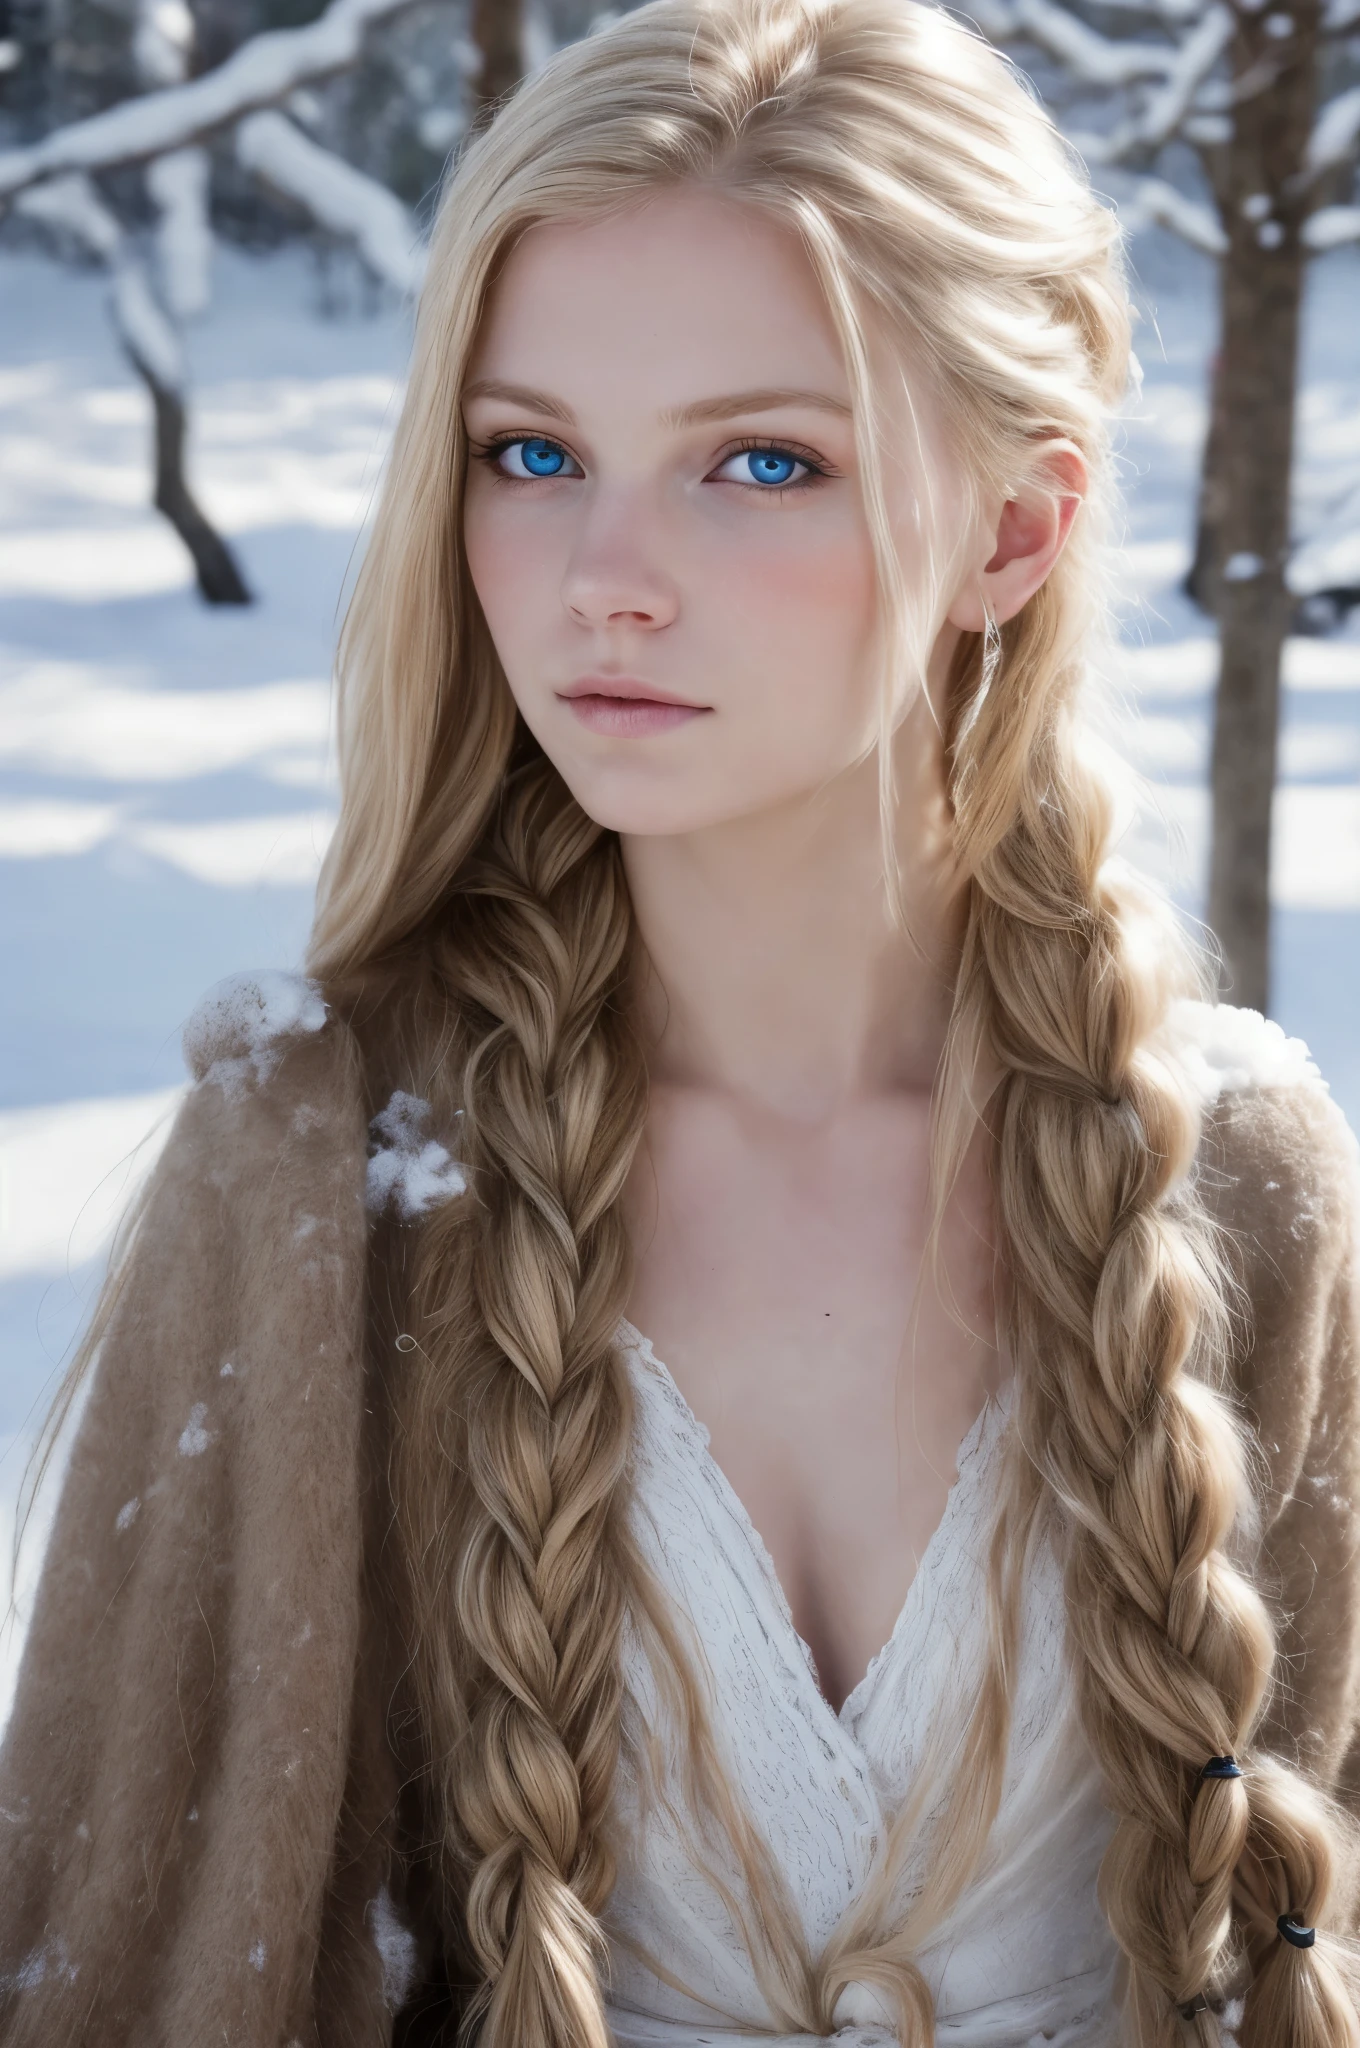 (实际的:1.2), 模拟摄影风格, 斯堪的纳维亚女战士, 梦幻般的雪景, 金色辫子头发, 全身, 柔和的自然光, 可爱又性感, 乐趣, 细致的脸部和蓝眼睛, 优良的品质, 杰作, 详细的北方背景, 质量: 16千, RAW 照片